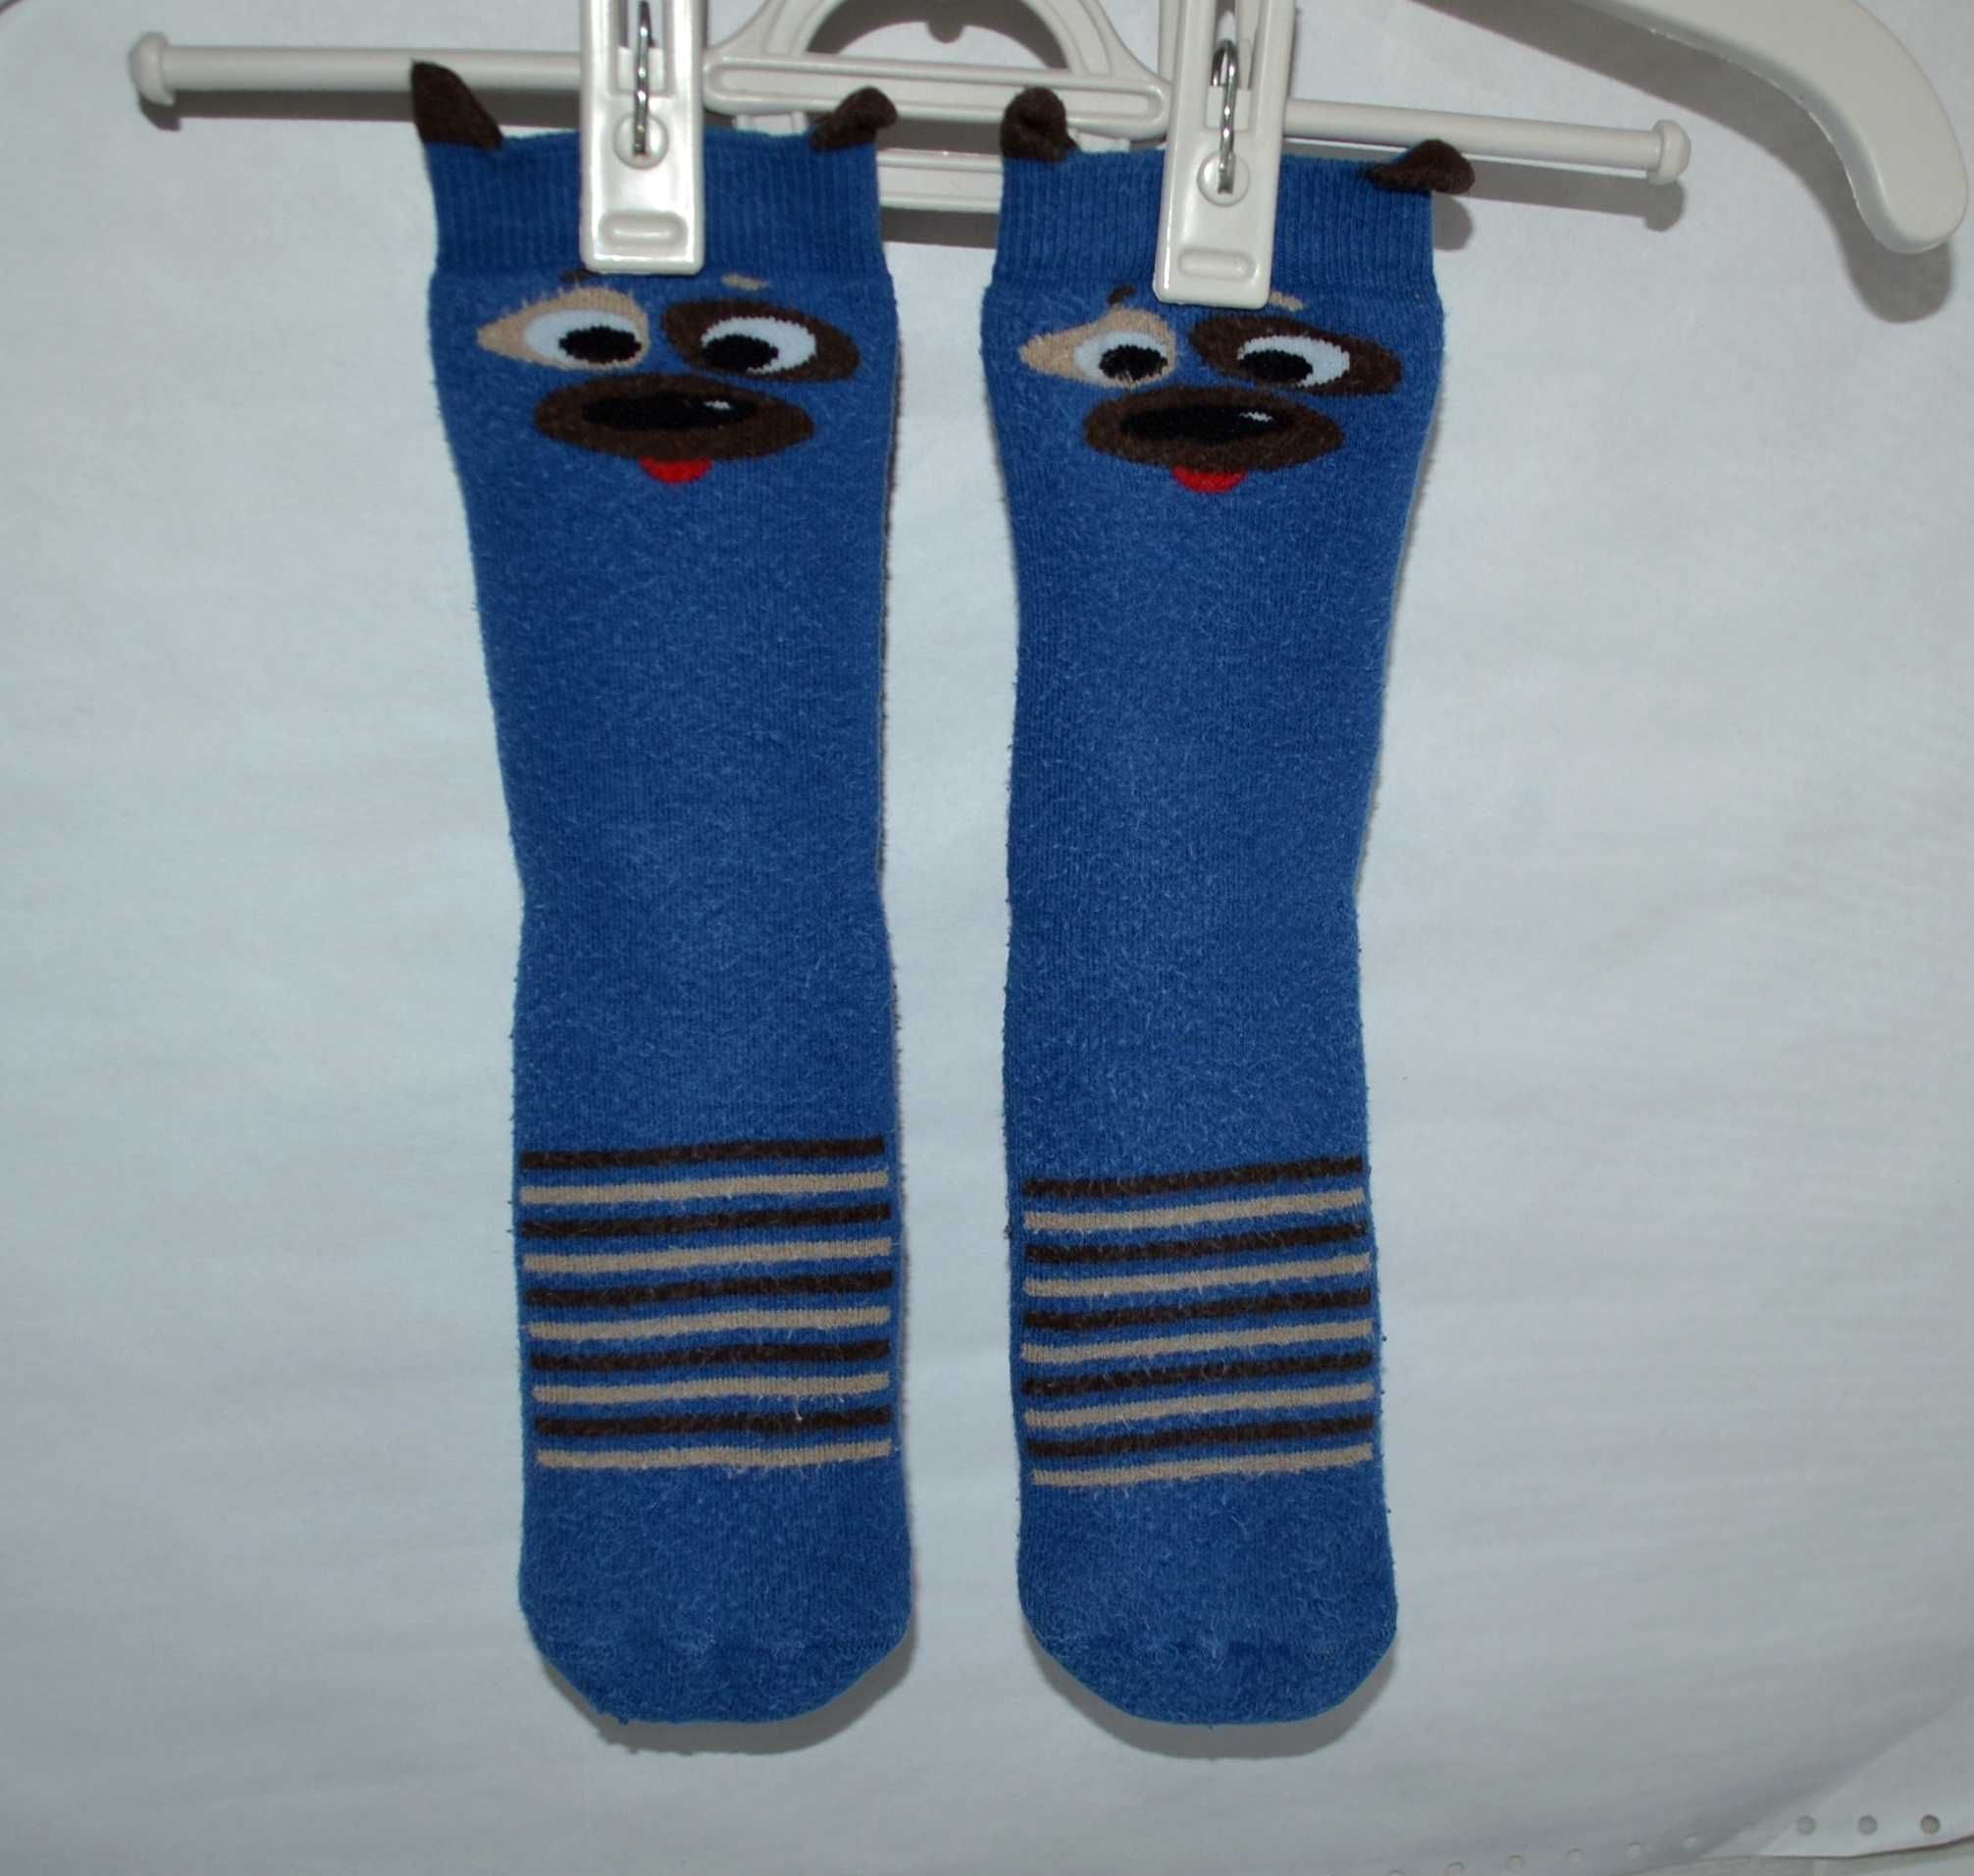 Ціна за дві пари! Дитячі махрові шкарпетки на стопу 16-18 см р. 26-28